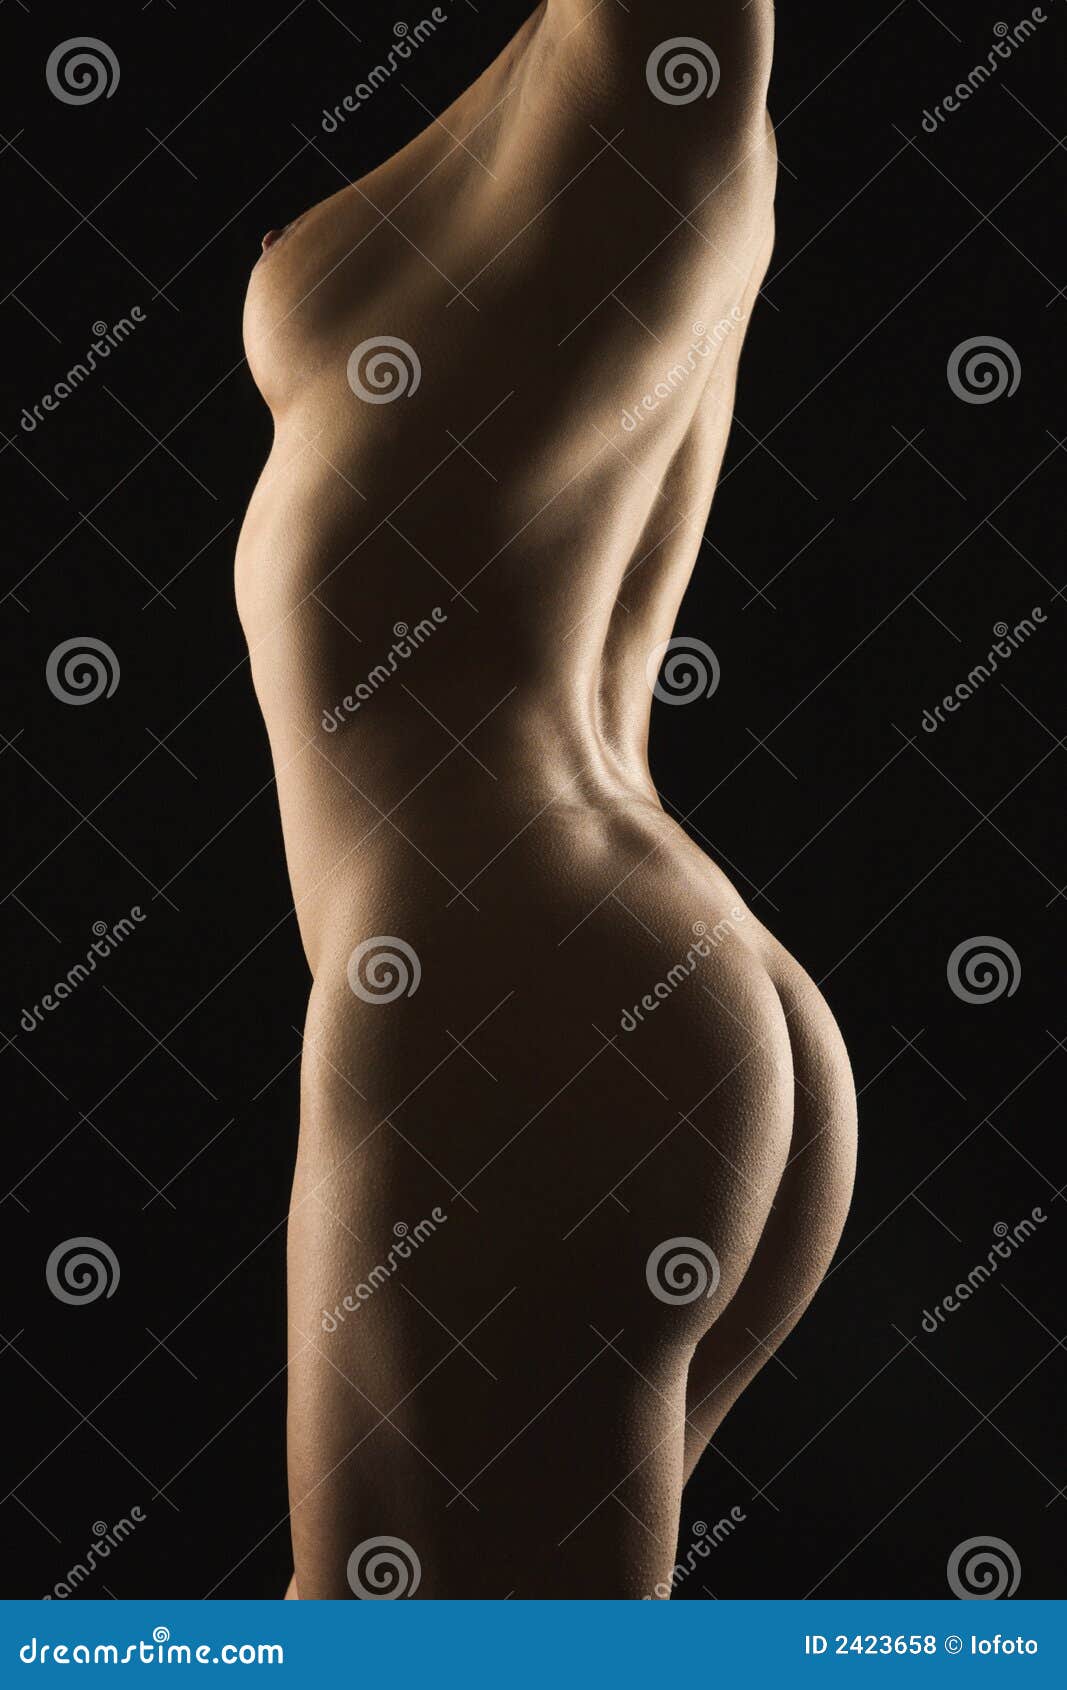 Nude Profile Photos